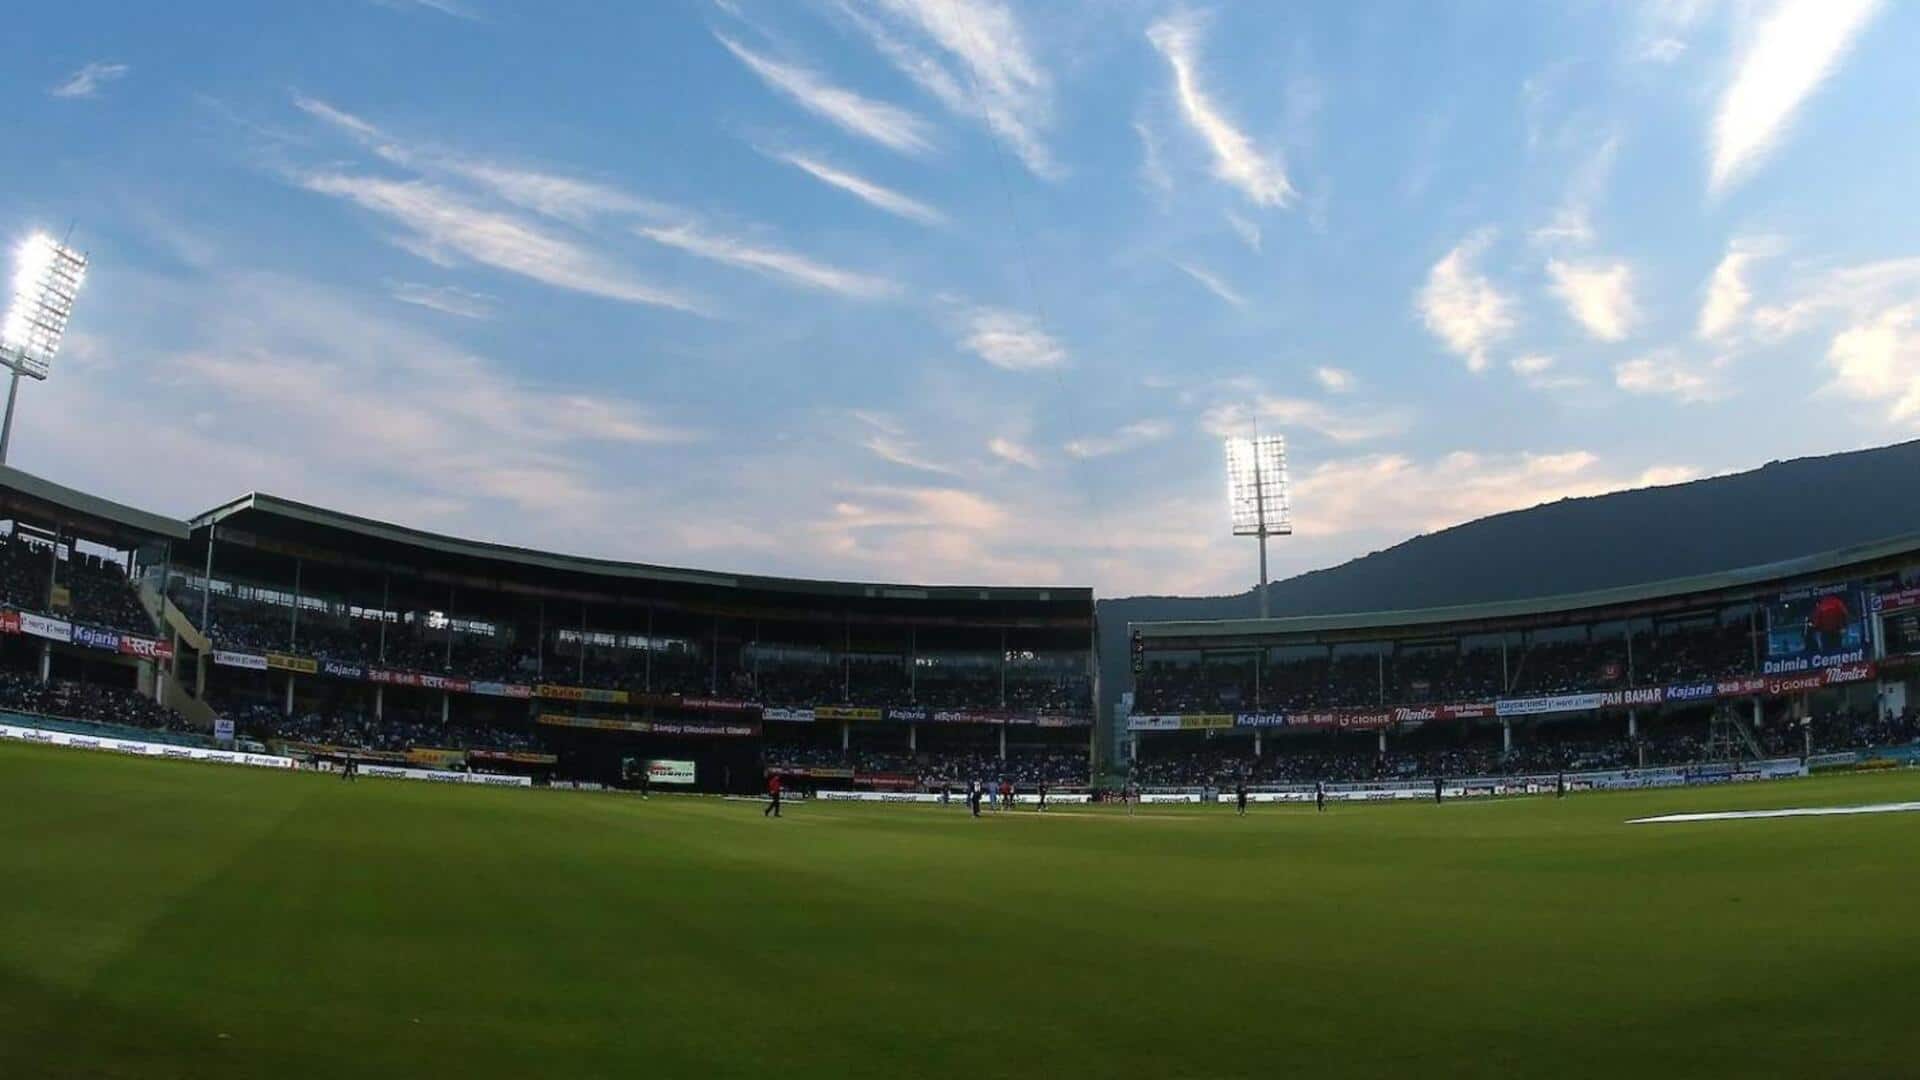 भारत बनाम ऑस्ट्रेलिया: विशाखापट्टनम स्टेडियम की पिच रिपोर्ट और उससे जुड़े रोचक आंकड़े 